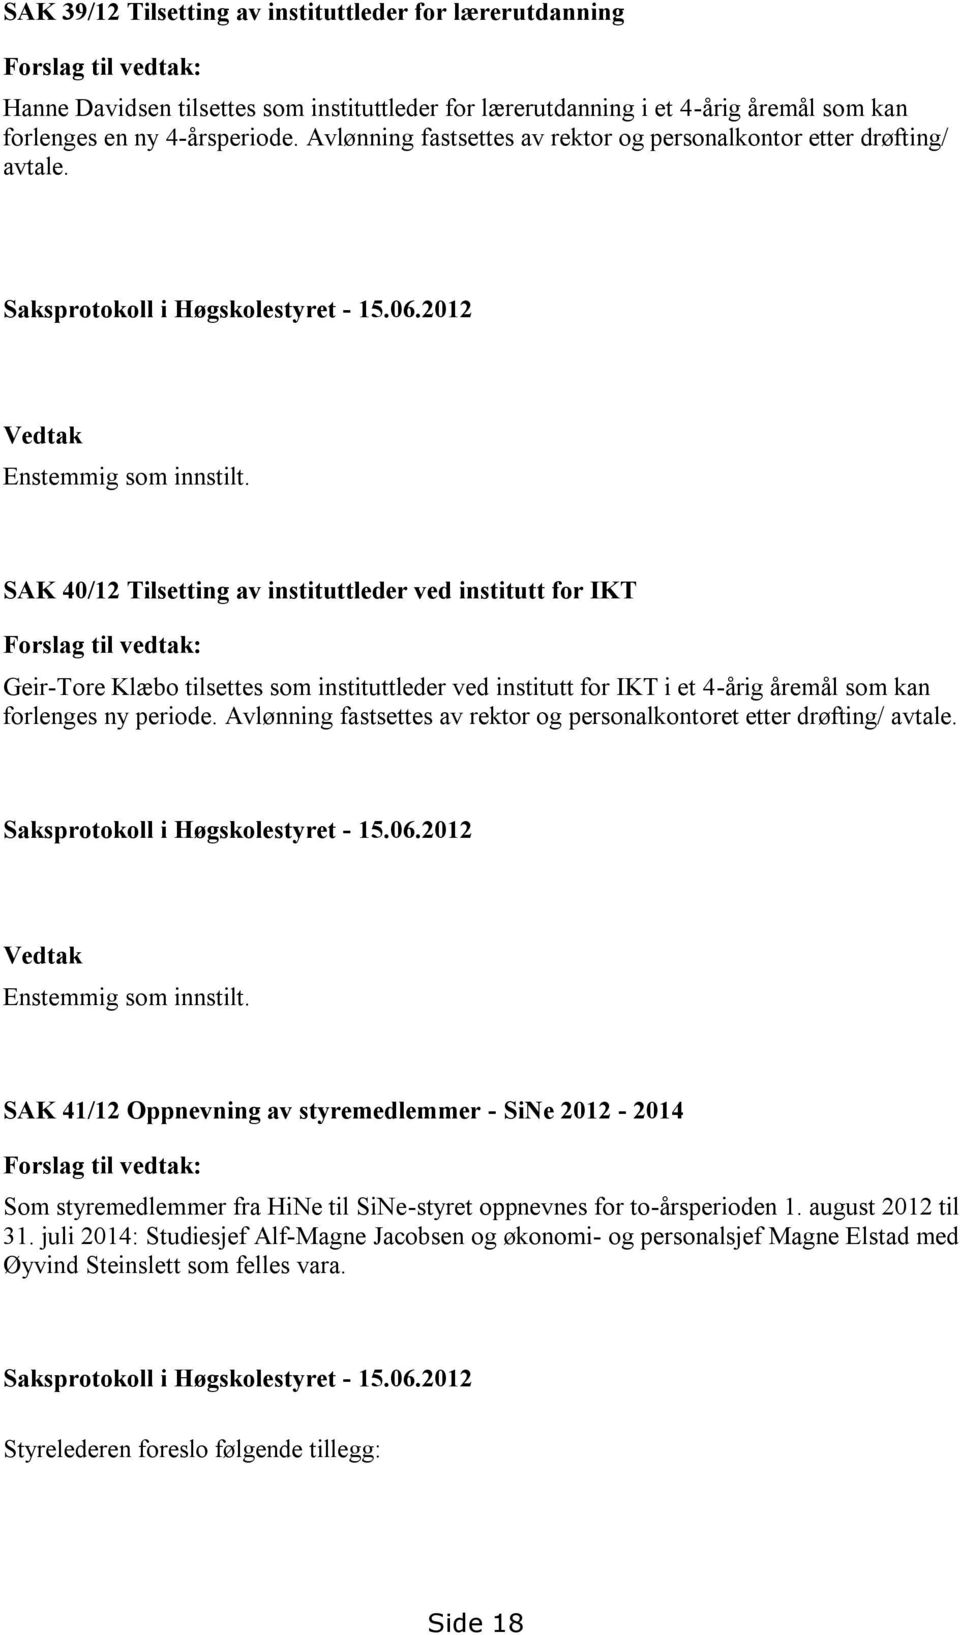 SAK 40/12 Tilsetting av instituttleder ved institutt for IKT Forslag til vedtak: Geir-Tore Klæbo tilsettes som instituttleder ved institutt for IKT i et 4-årig åremål som kan forlenges ny periode.